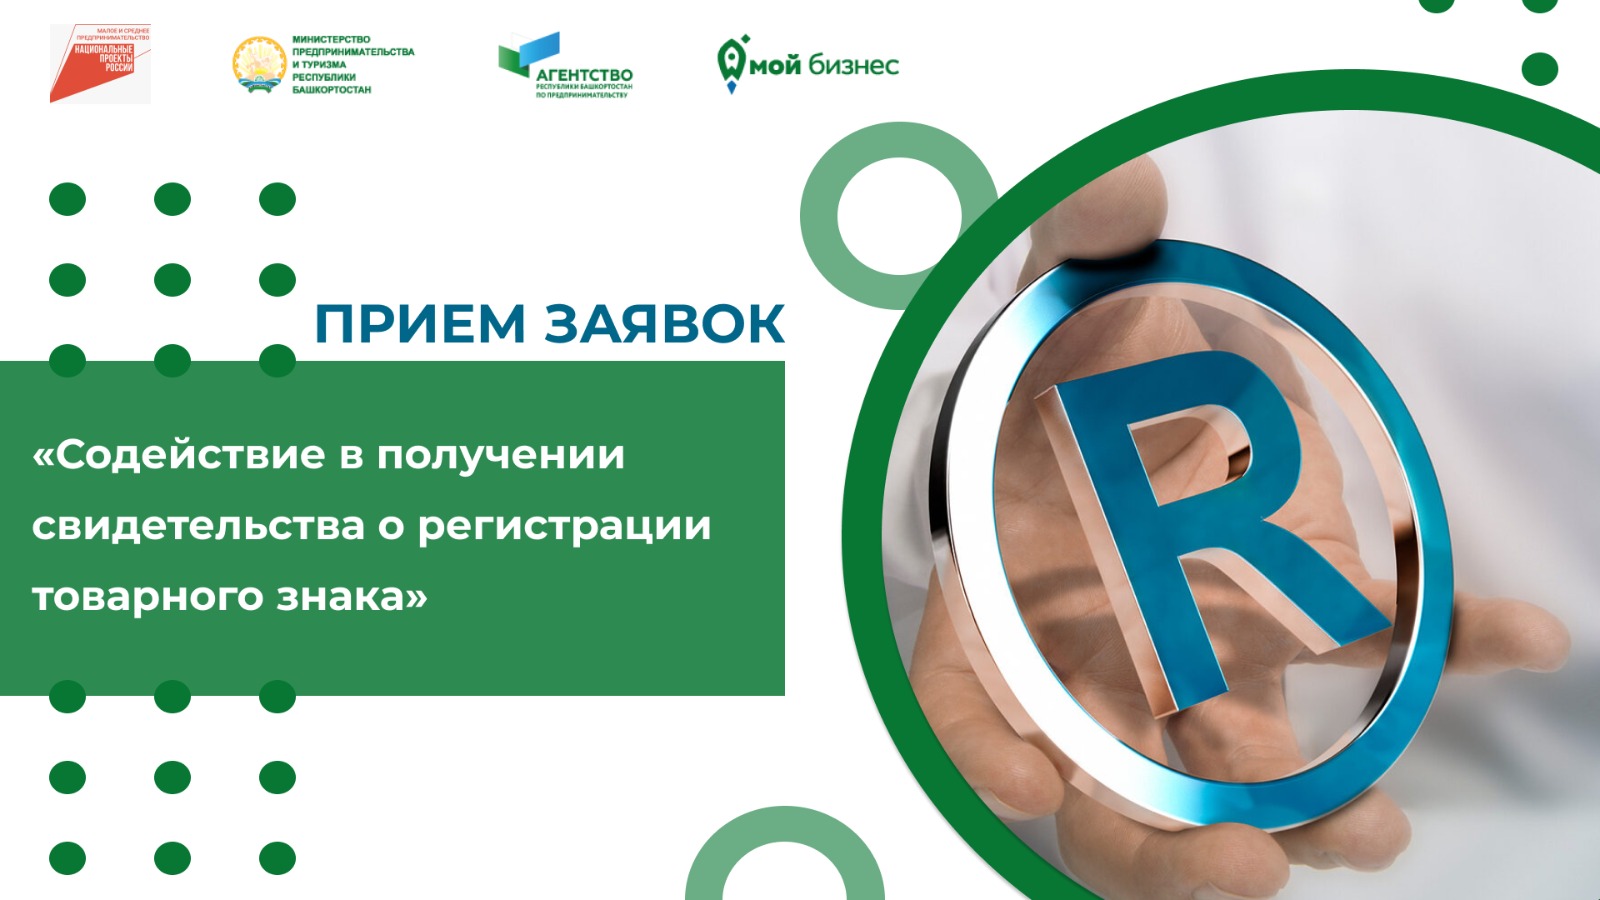 Открыт приём заявок на регистрацию товарного знака для субъектов МСП Башкортостана